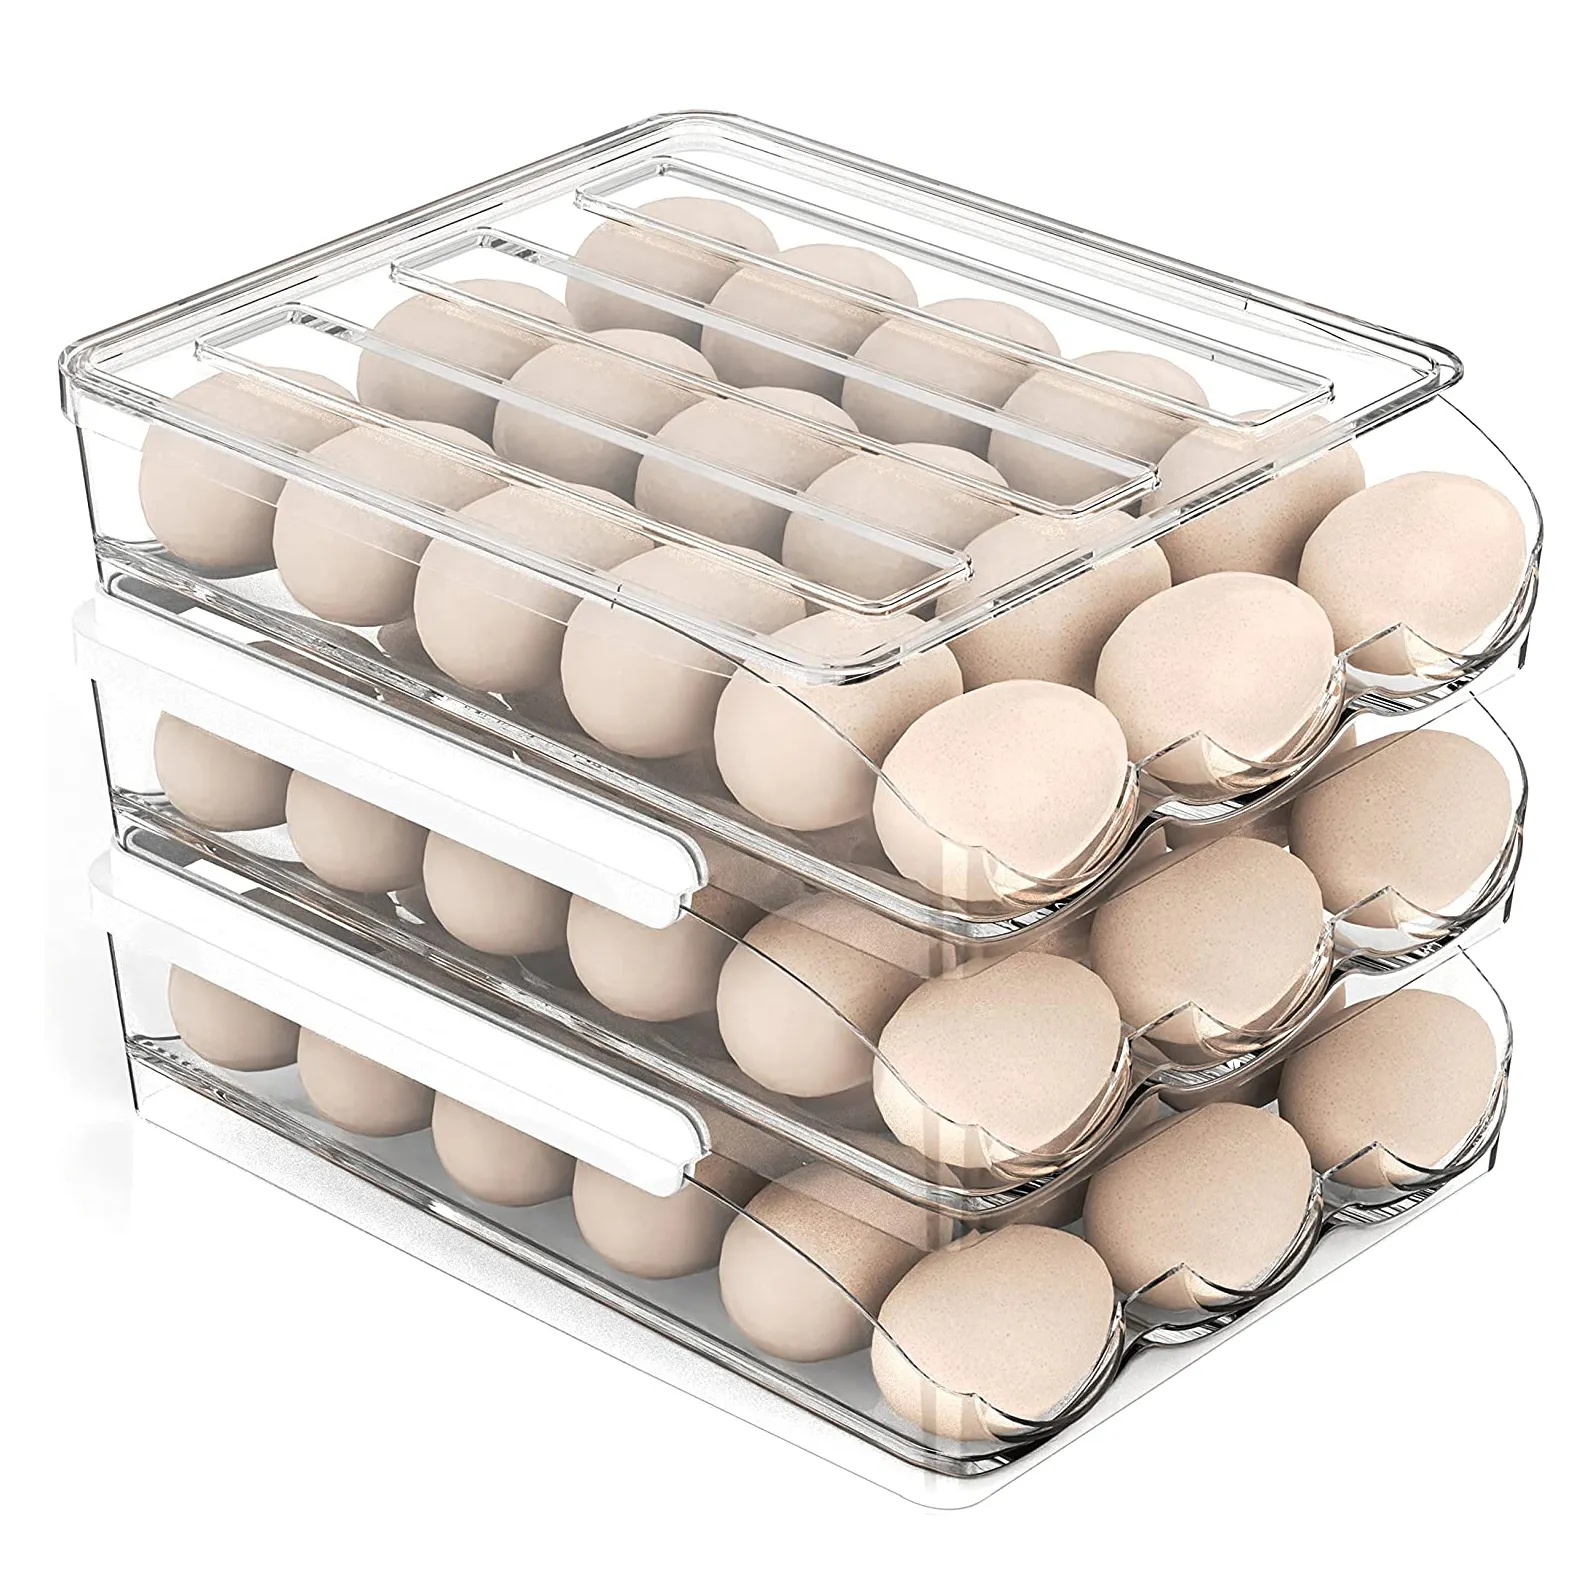 Soporte de huevos de gran capacidad para refrigerador, caja de almacenamiento de huevos frescos para nevera, contenedor de almacenamiento de huevos, contenedor organizador